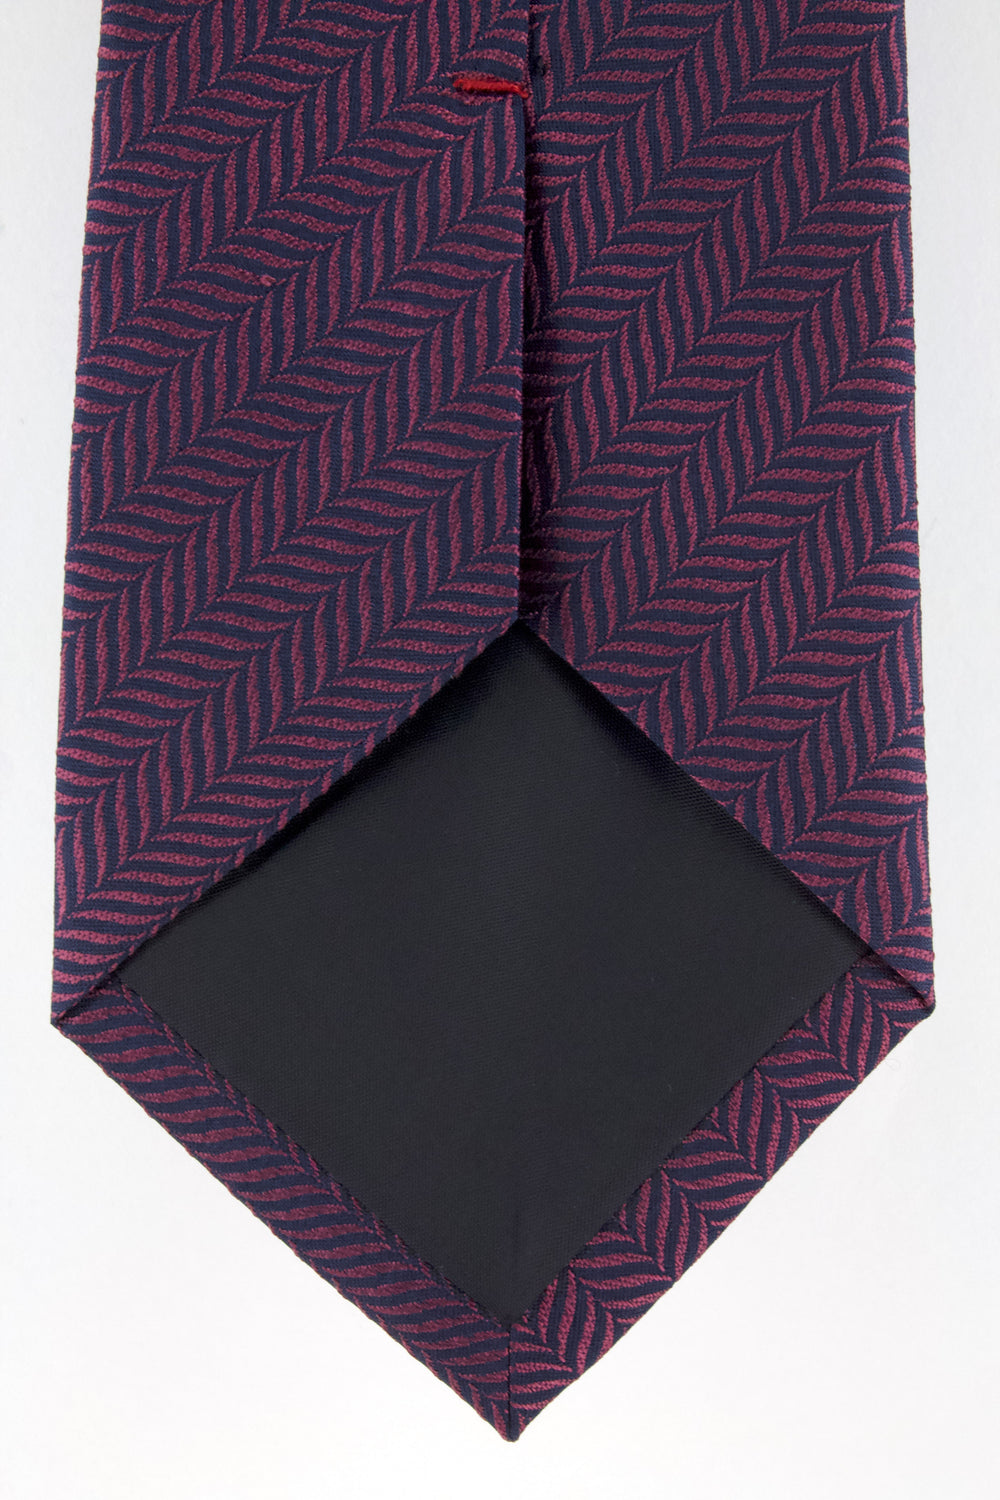 Cravate en soie tissée bordeaux motif chevron marine